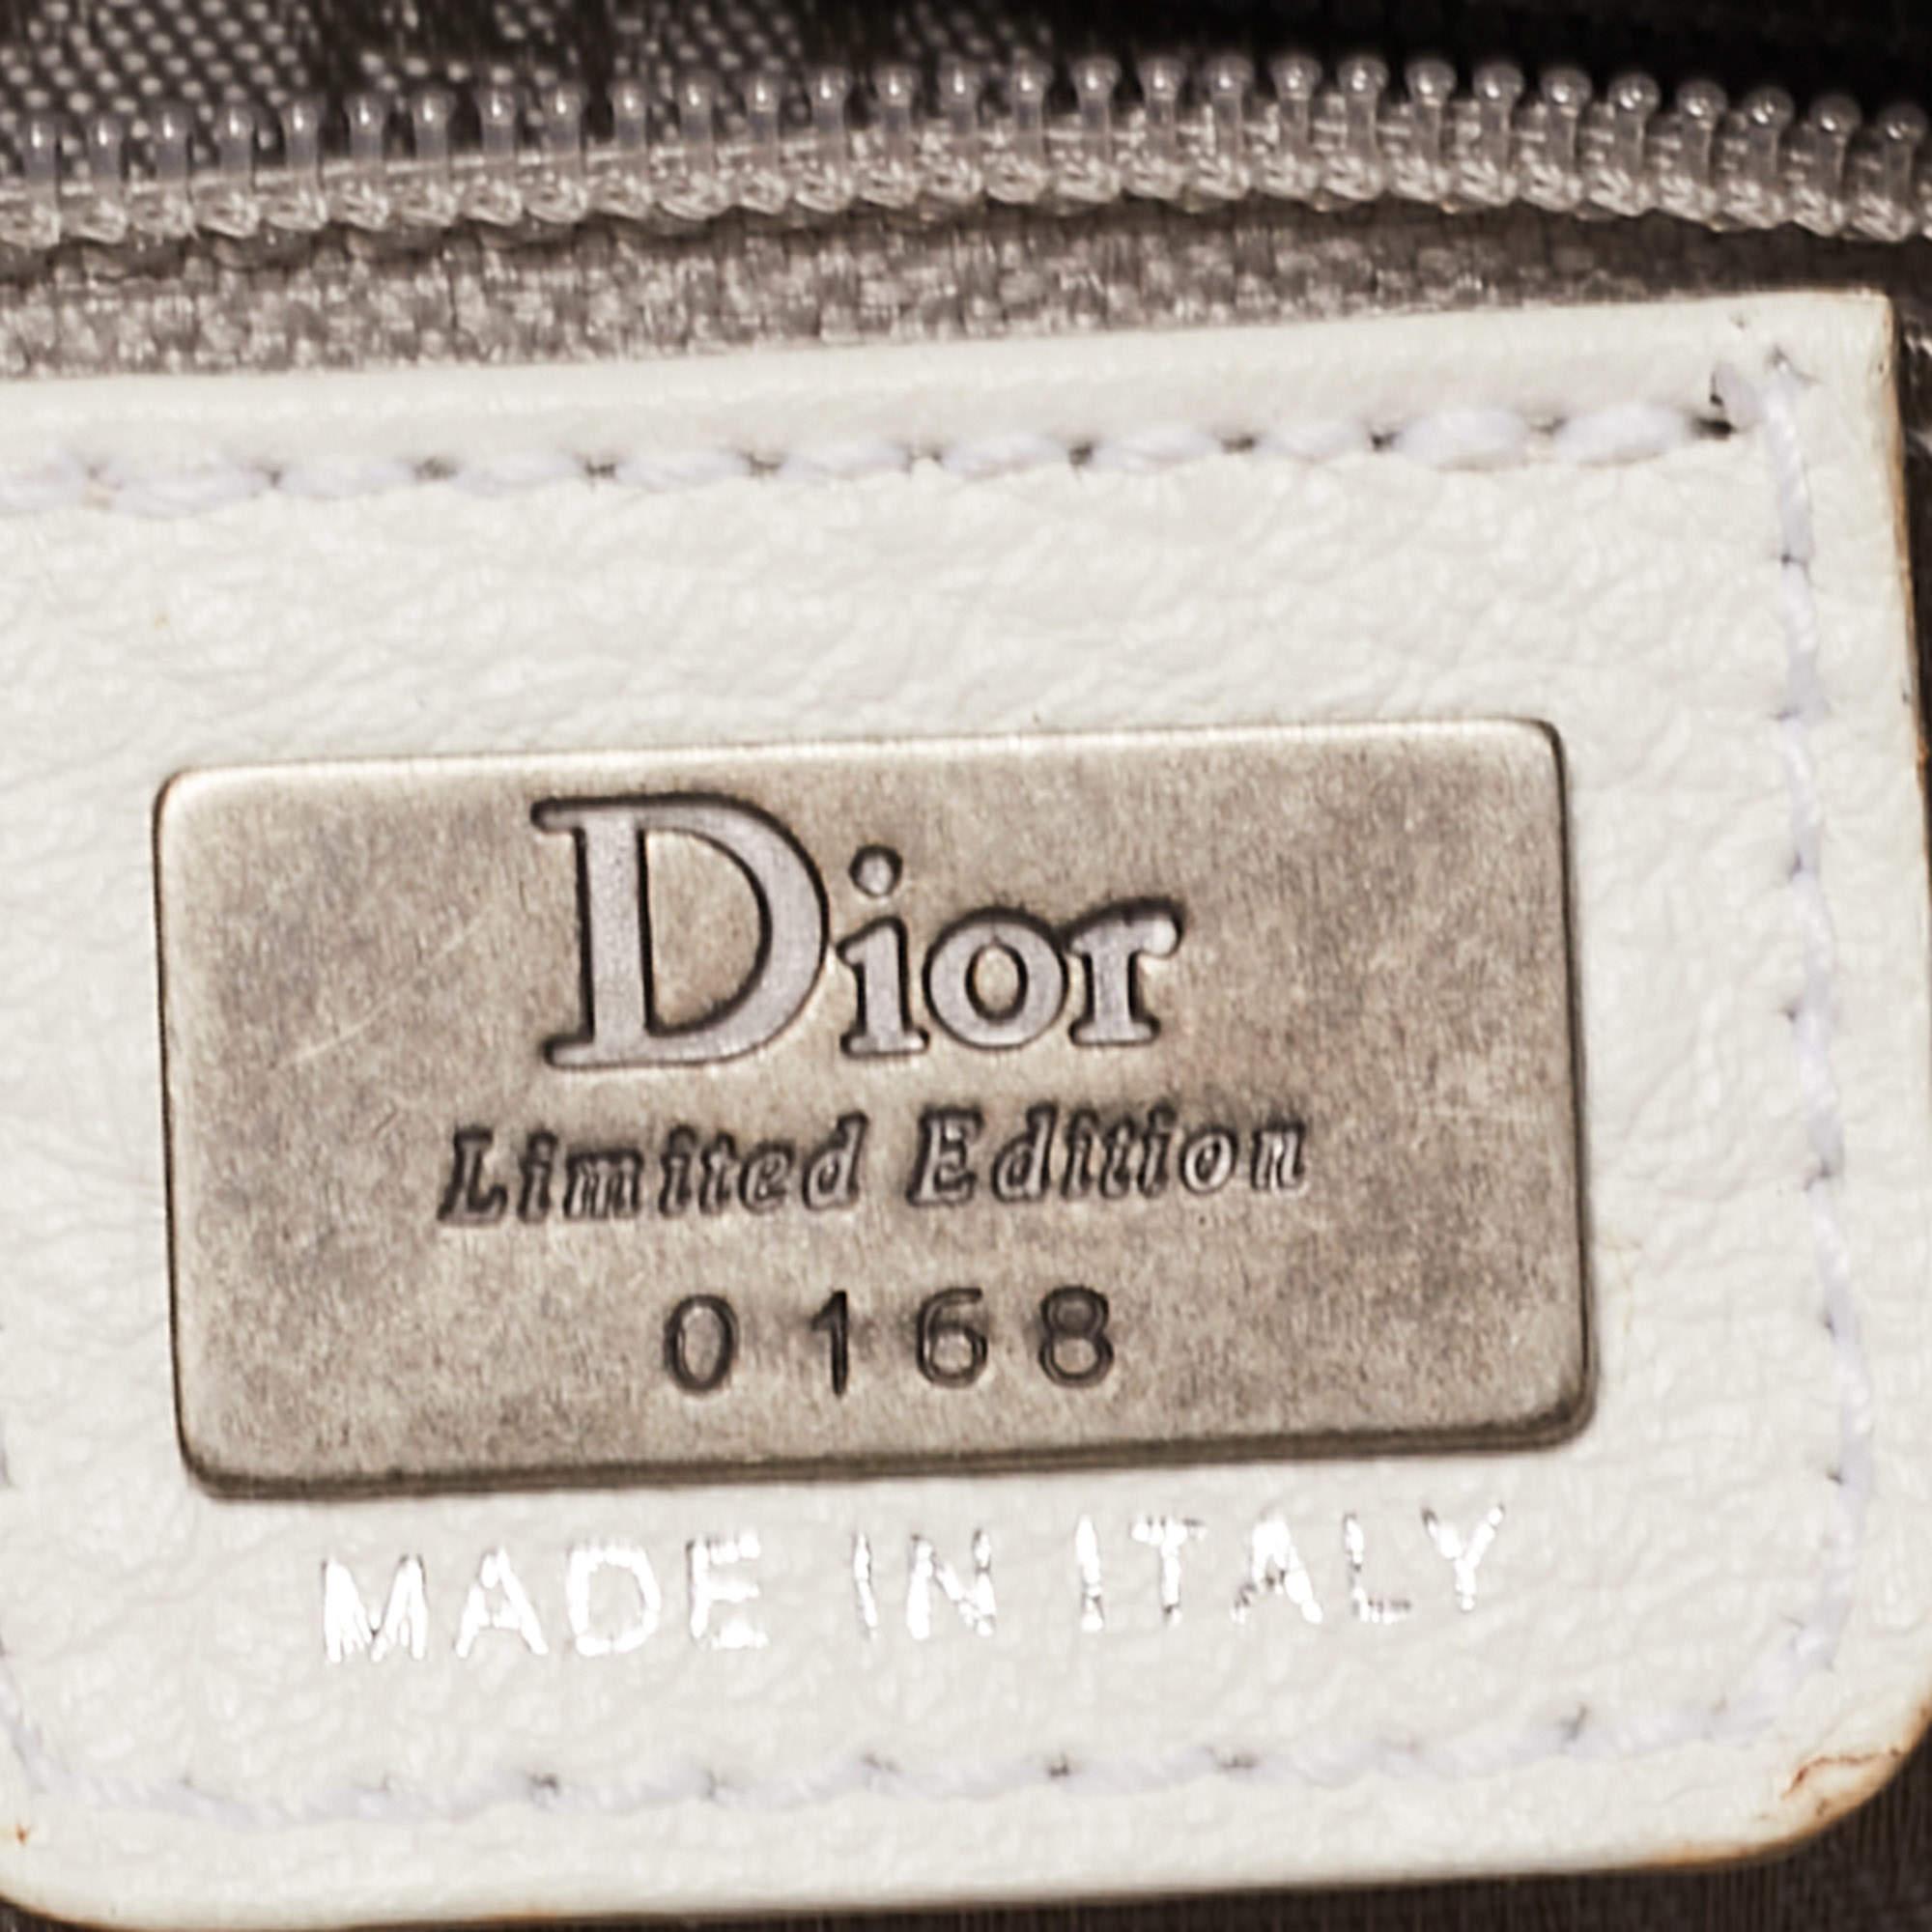 Dior Weiße Leder Limited Edition 0168 Gaucho Alpine Satteltasche 15